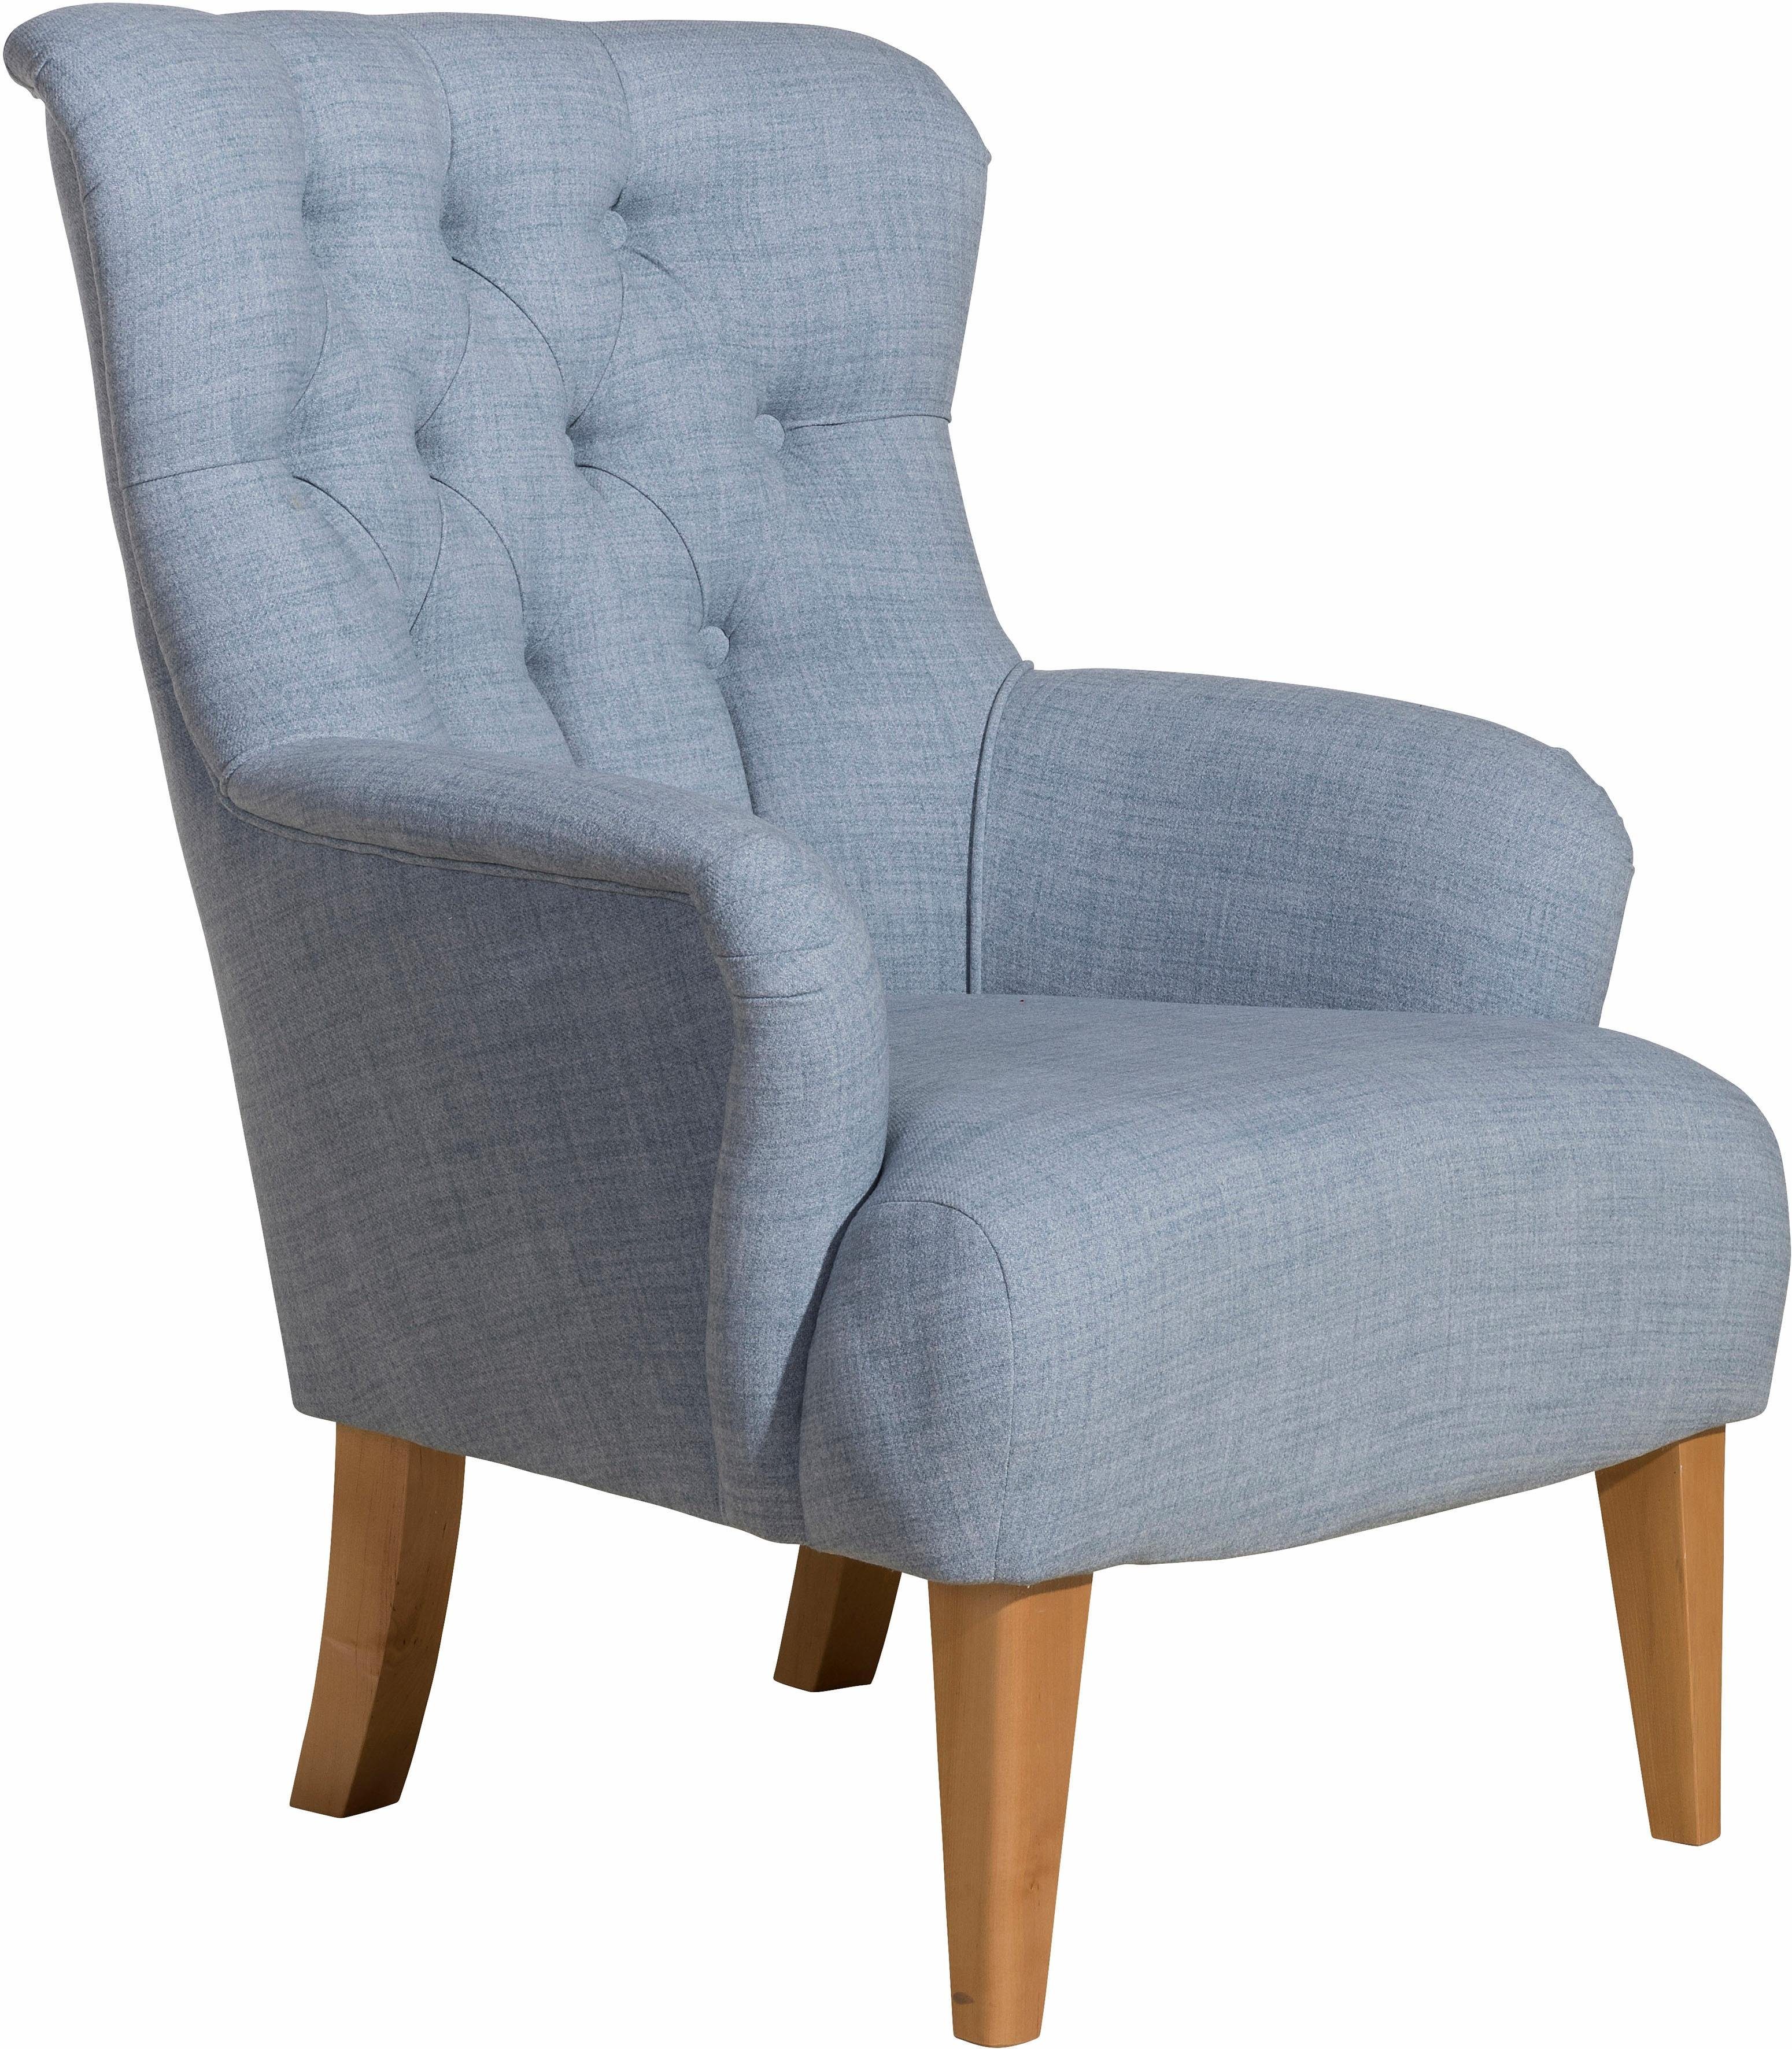 max winzer fauteuil bradley in chesterfield-stijl, met ruitencapitonnage achter, stoel met een hoge rugleuning grijs